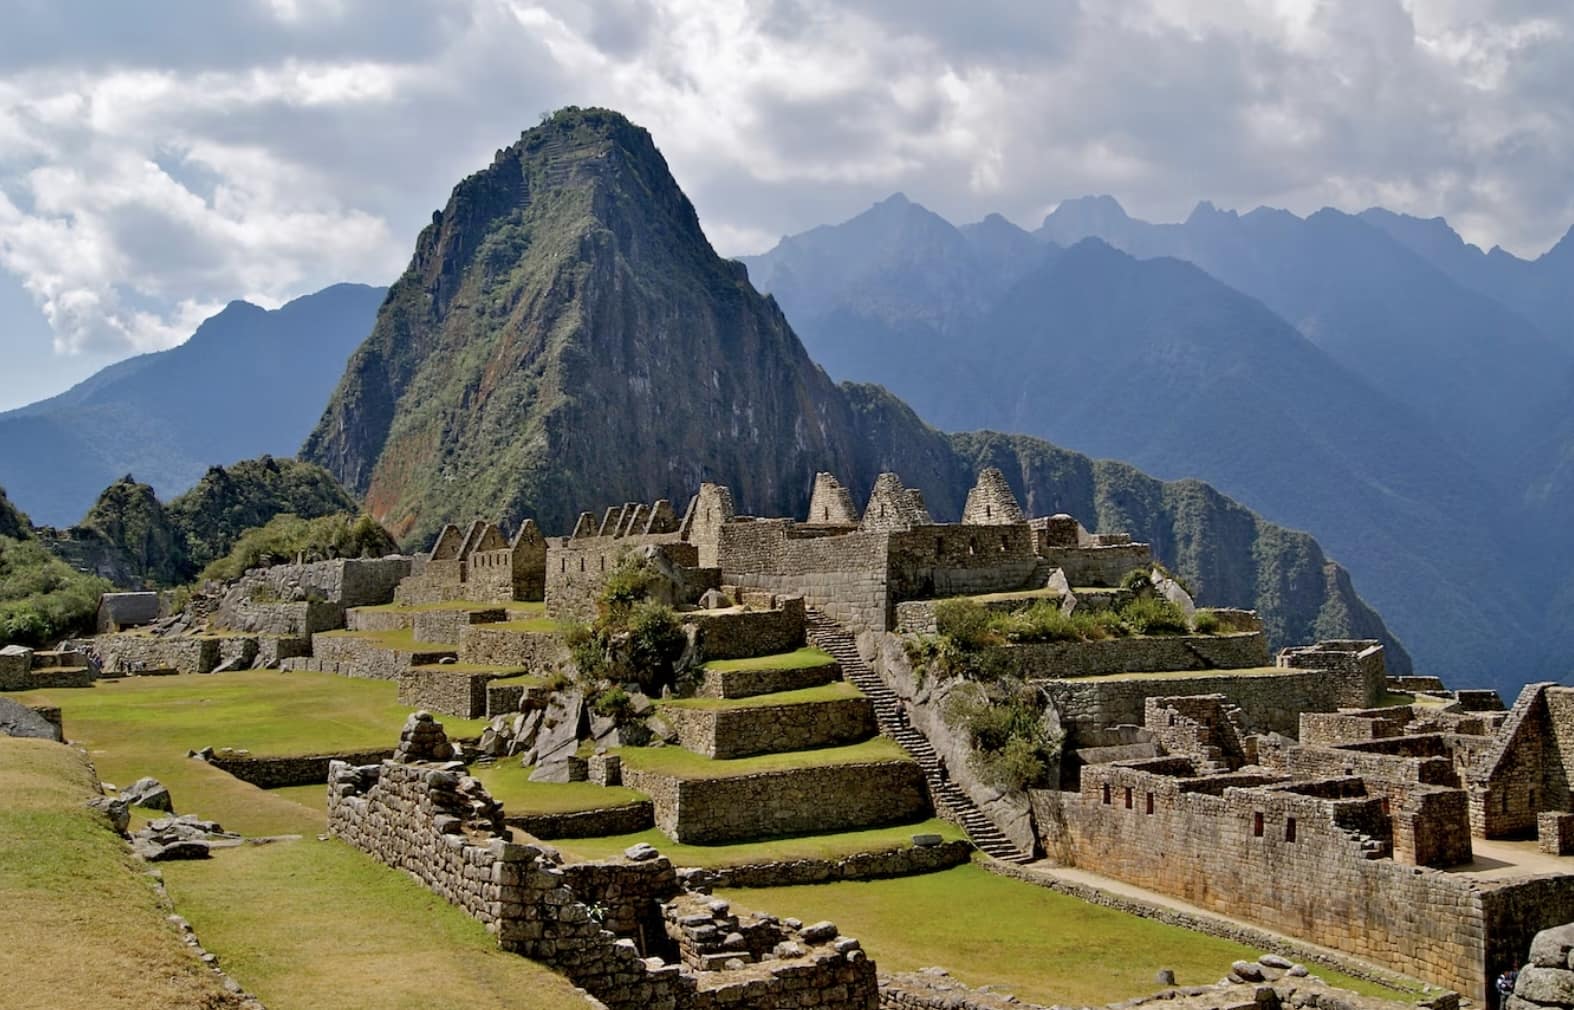 Wann und wie wurde Machu Picchu erbaut?